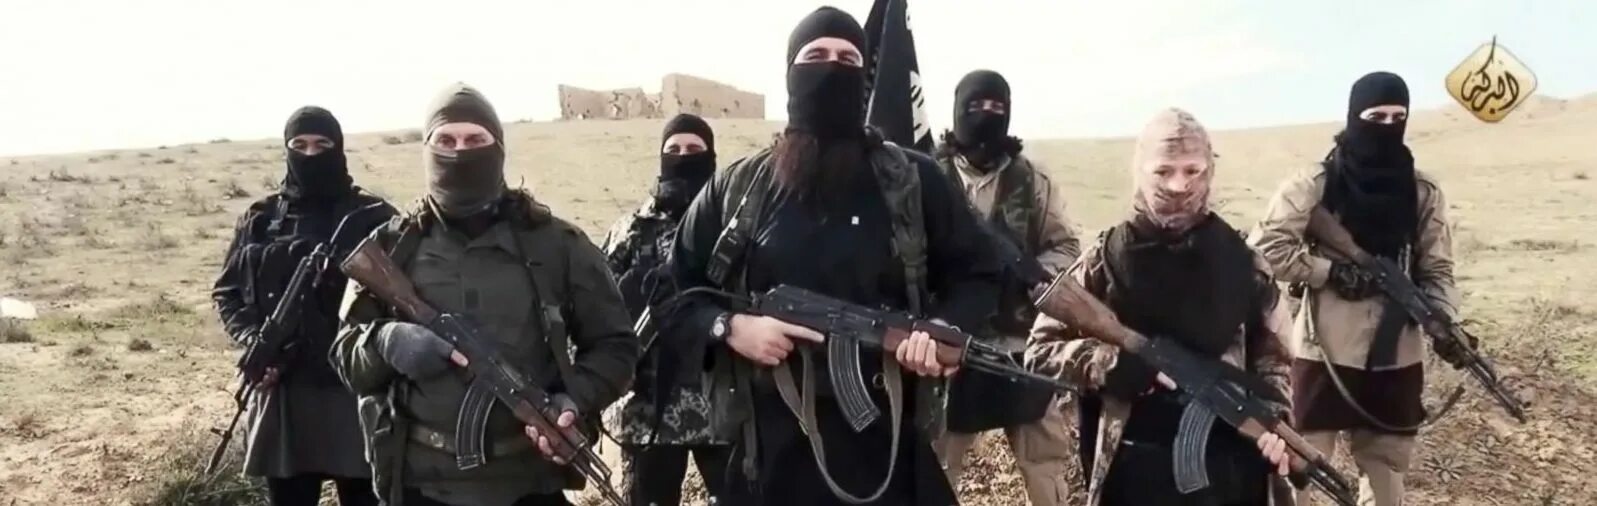 Видео со стороны террористов. Граждане Таджикистана ИГИЛ.